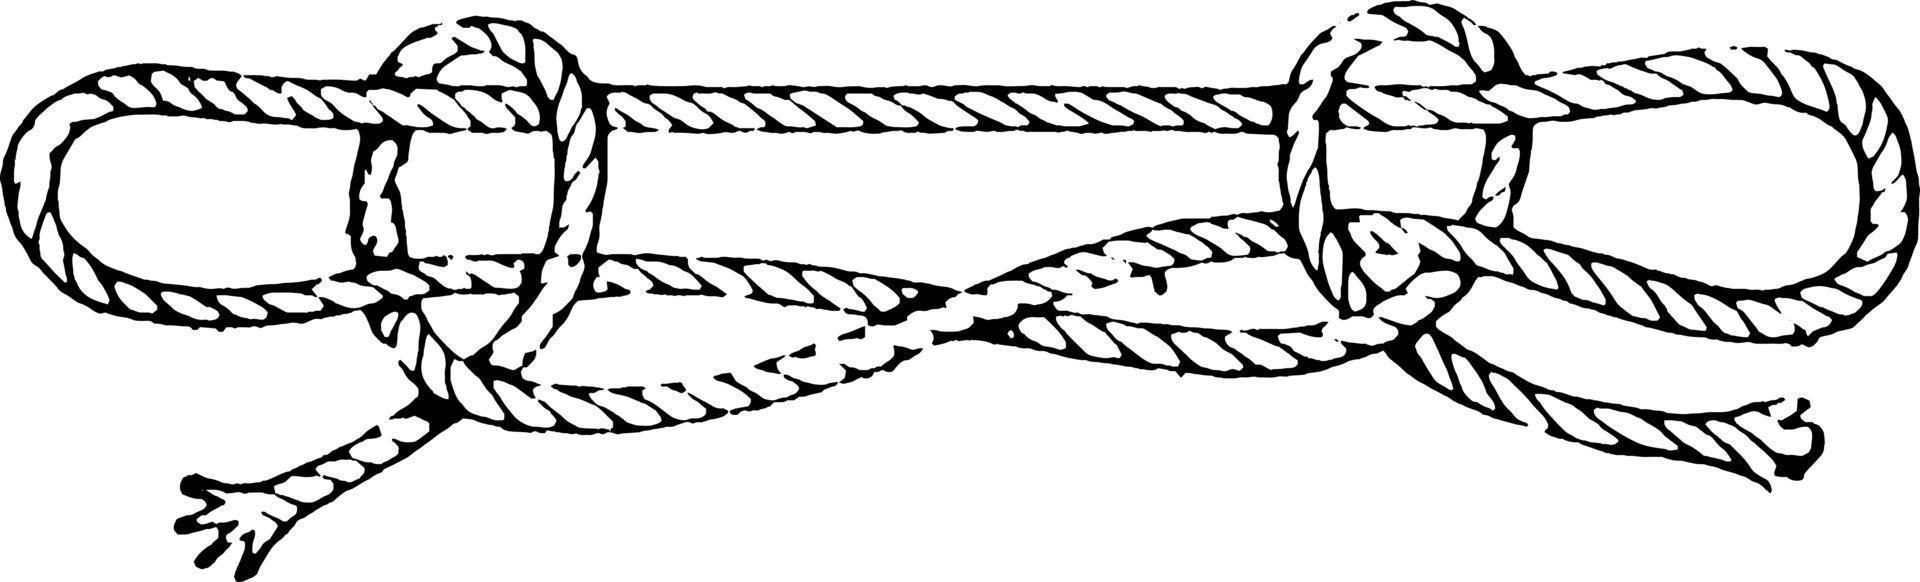 Knots or Sheepshank, vintage illustration vector